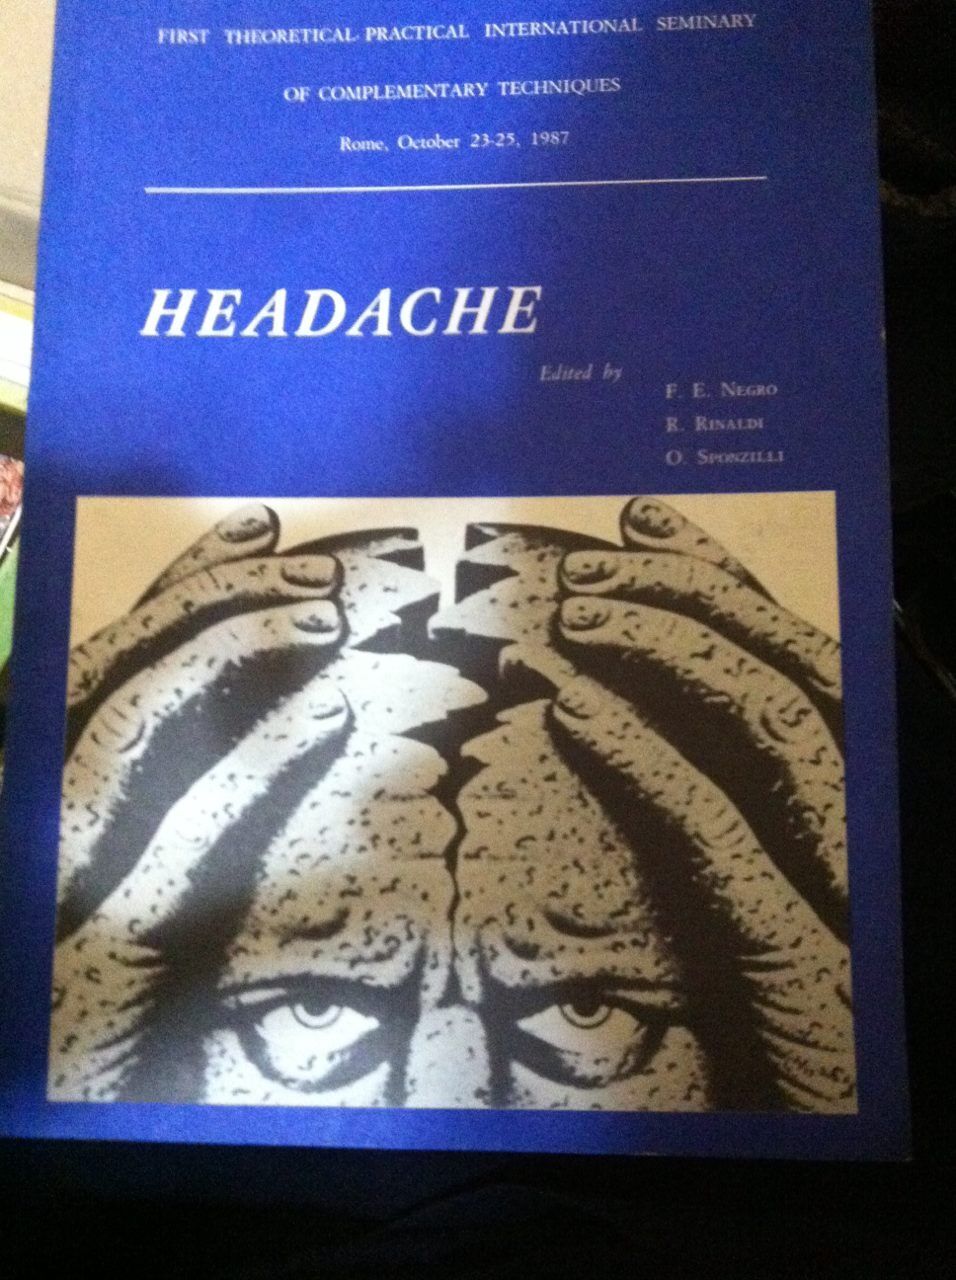 Headache - Negro-Rinaldi-Sponzilli - 1987 - Ferri - lo